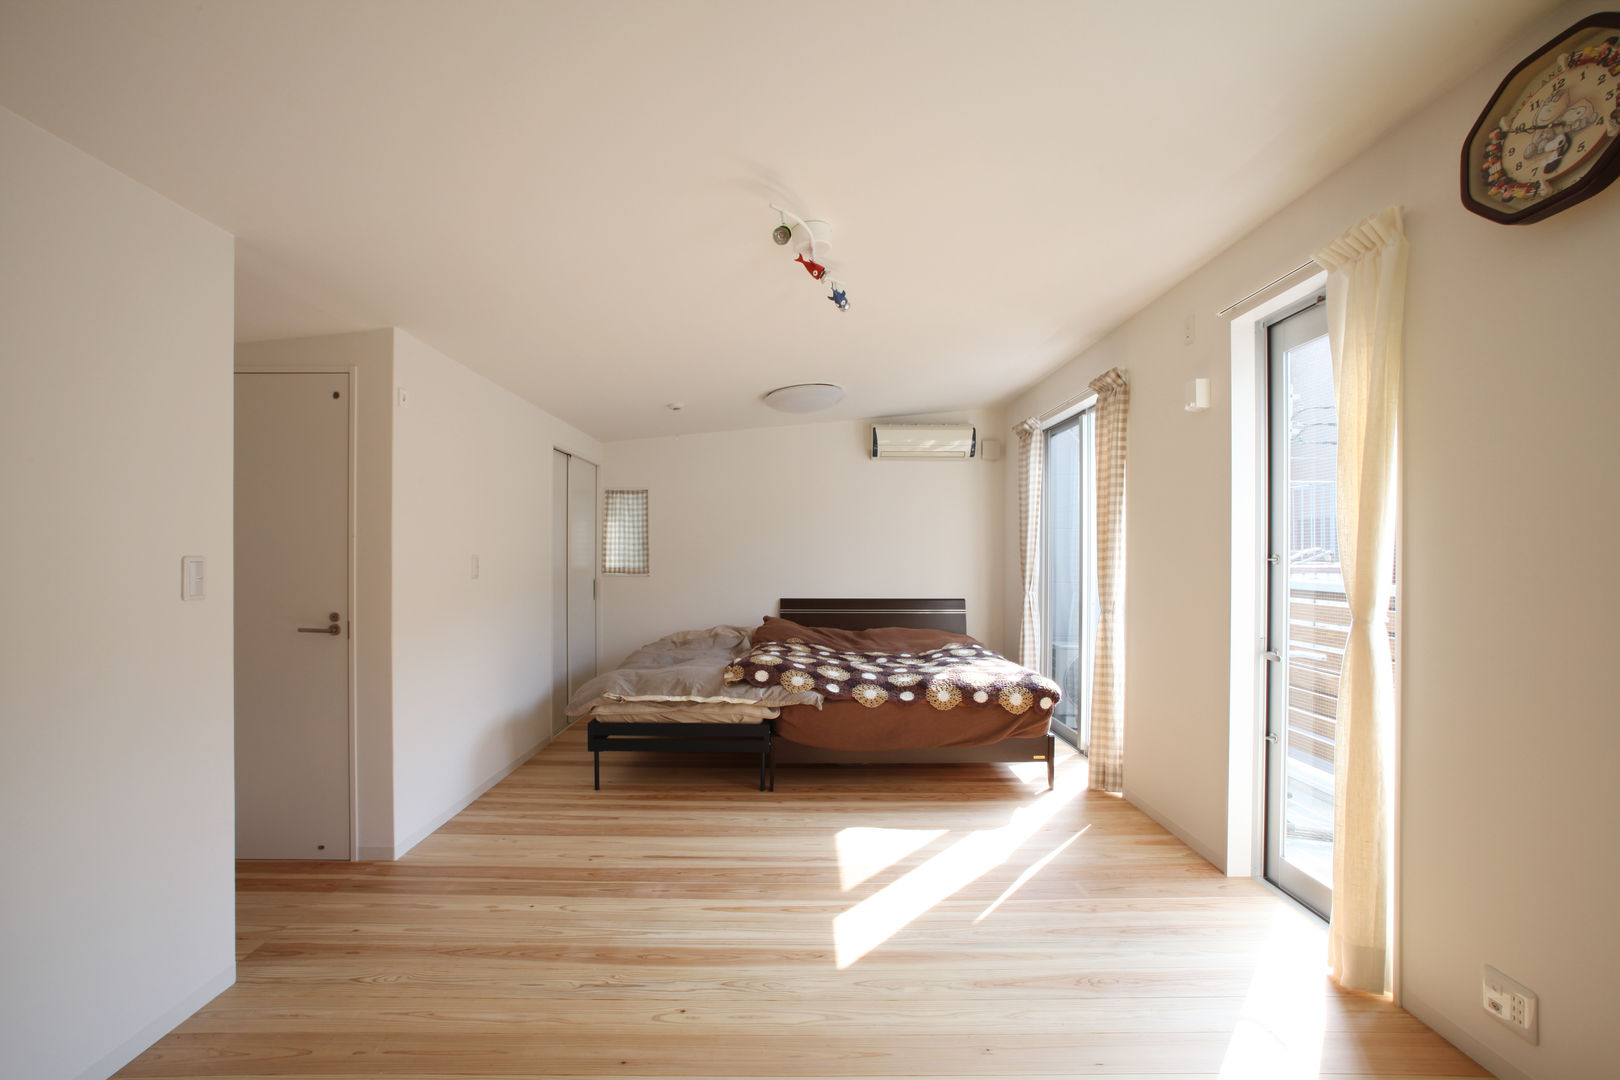 イタウバハウス－夢はかなえる－, 一級建築士事務所アトリエｍ 一級建築士事務所アトリエｍ Dormitorios infantiles modernos: